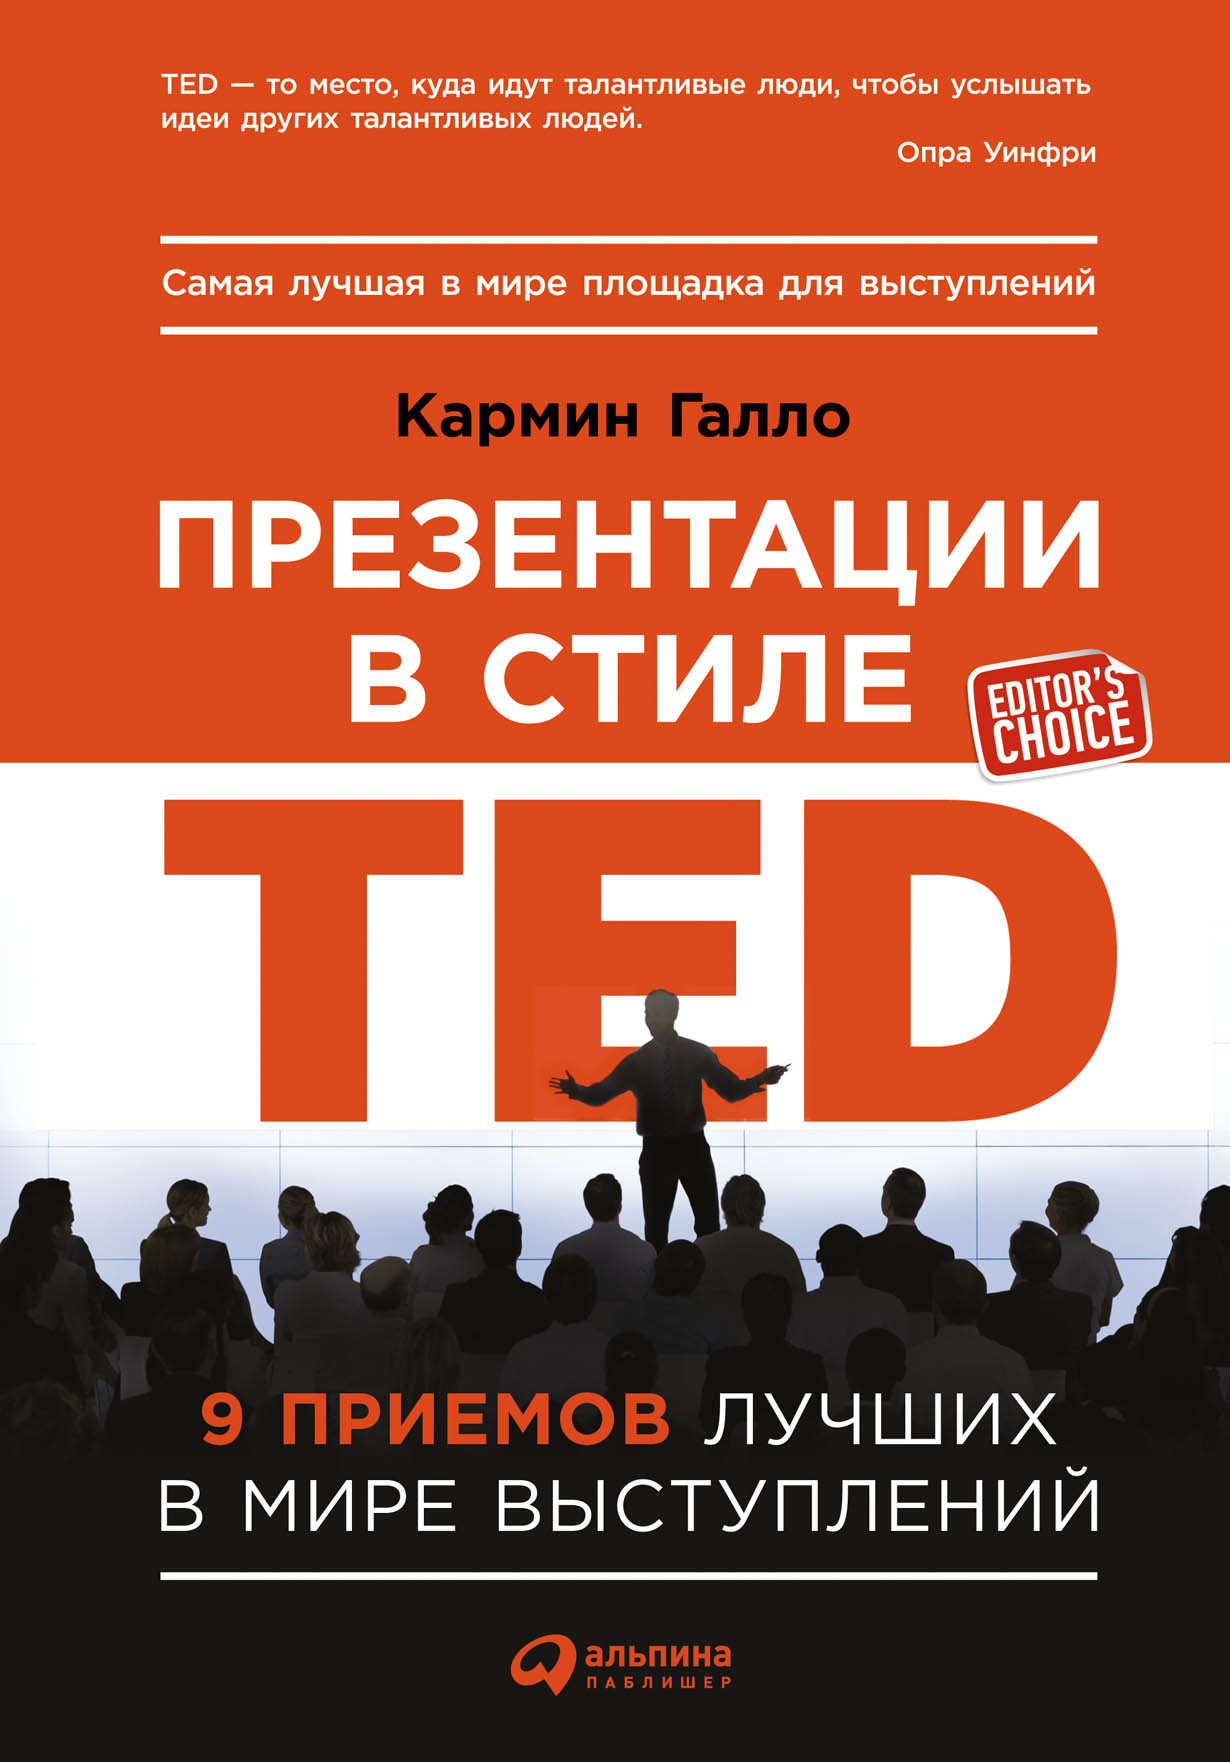 Презентации в стиле TED обложка.